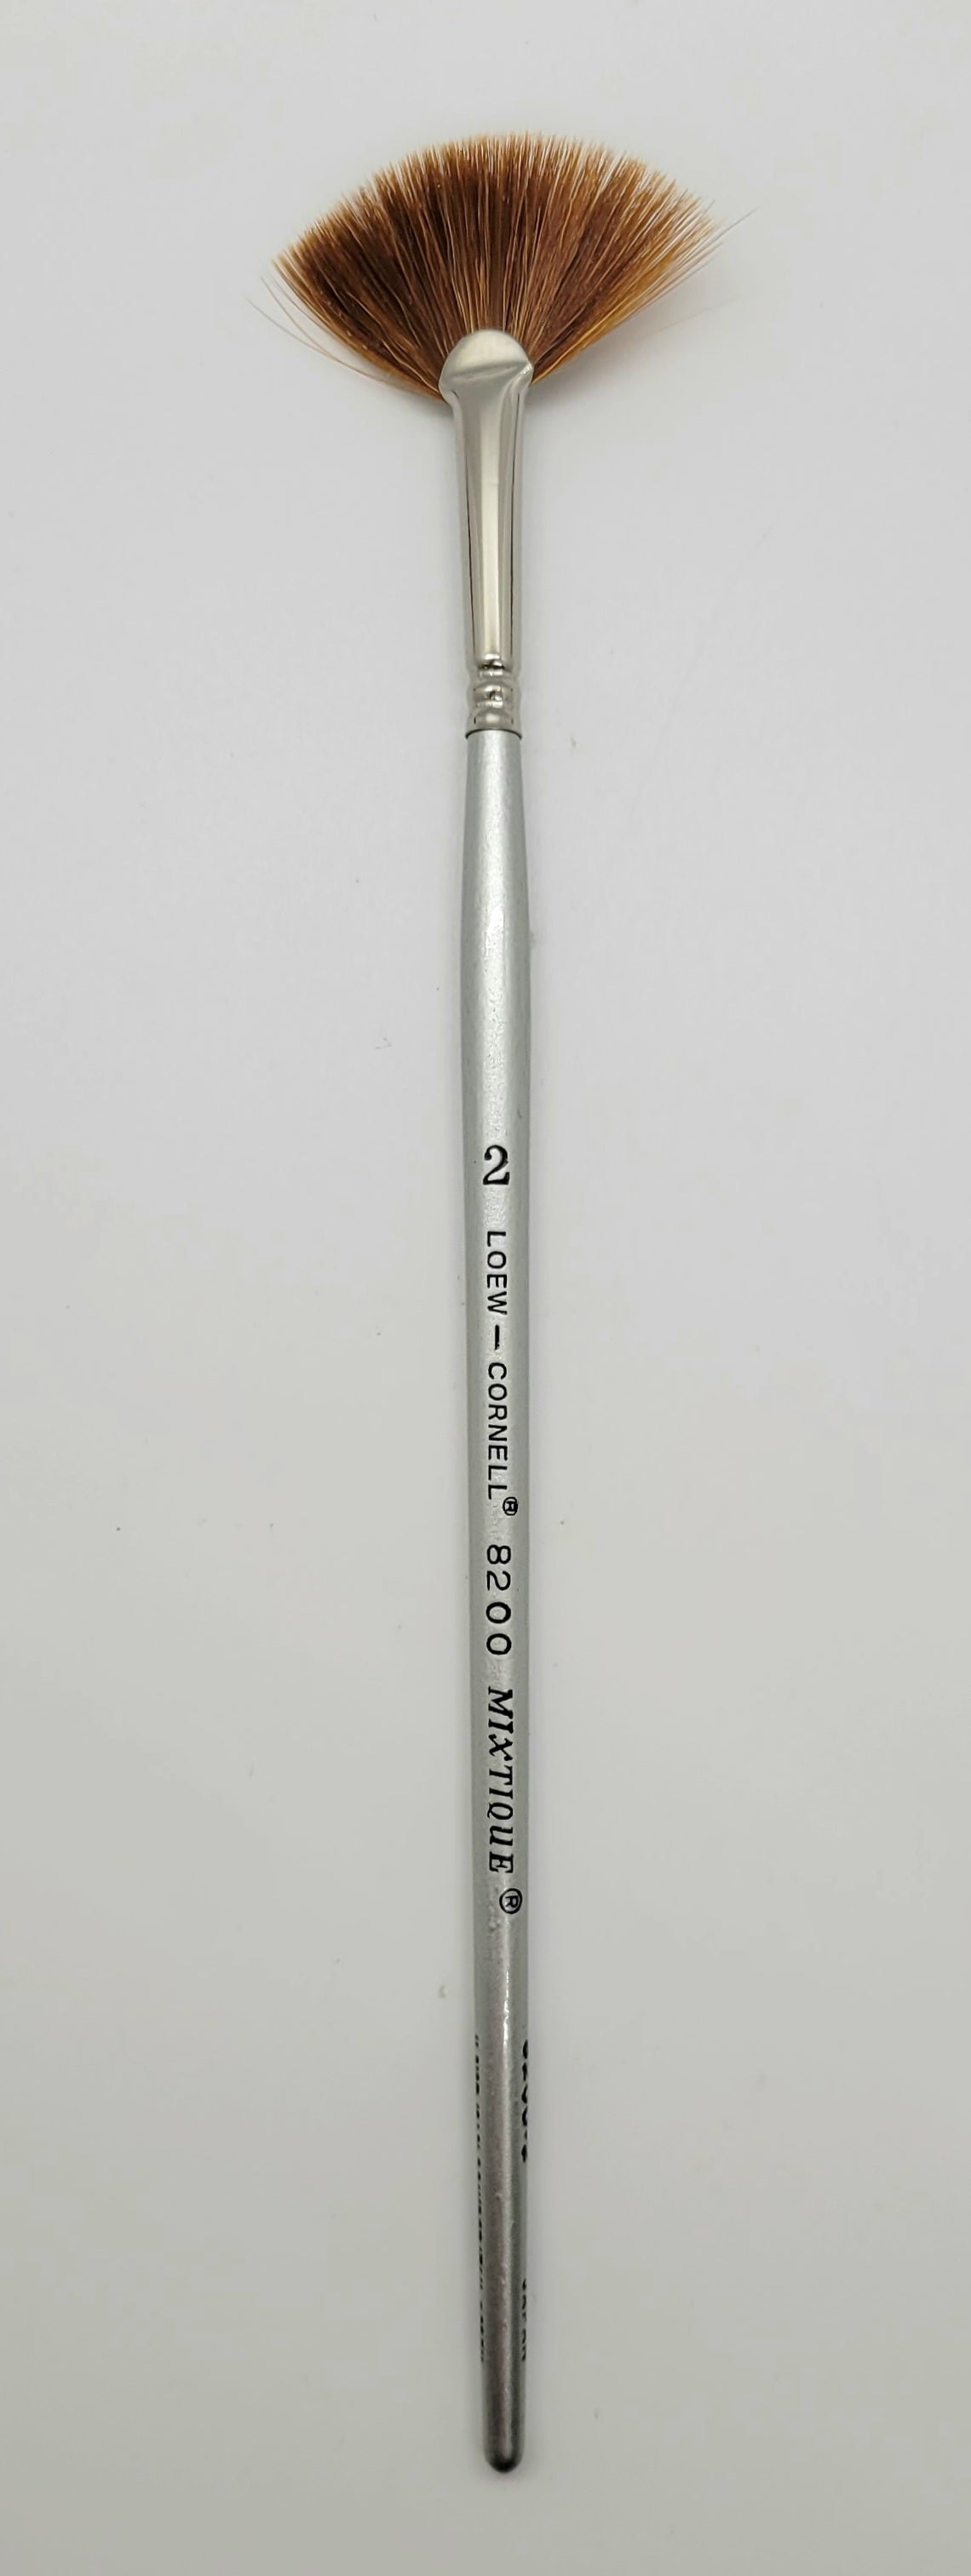 AS-26 Golden Taklon Synthetic Long Liner Artist Brush Set